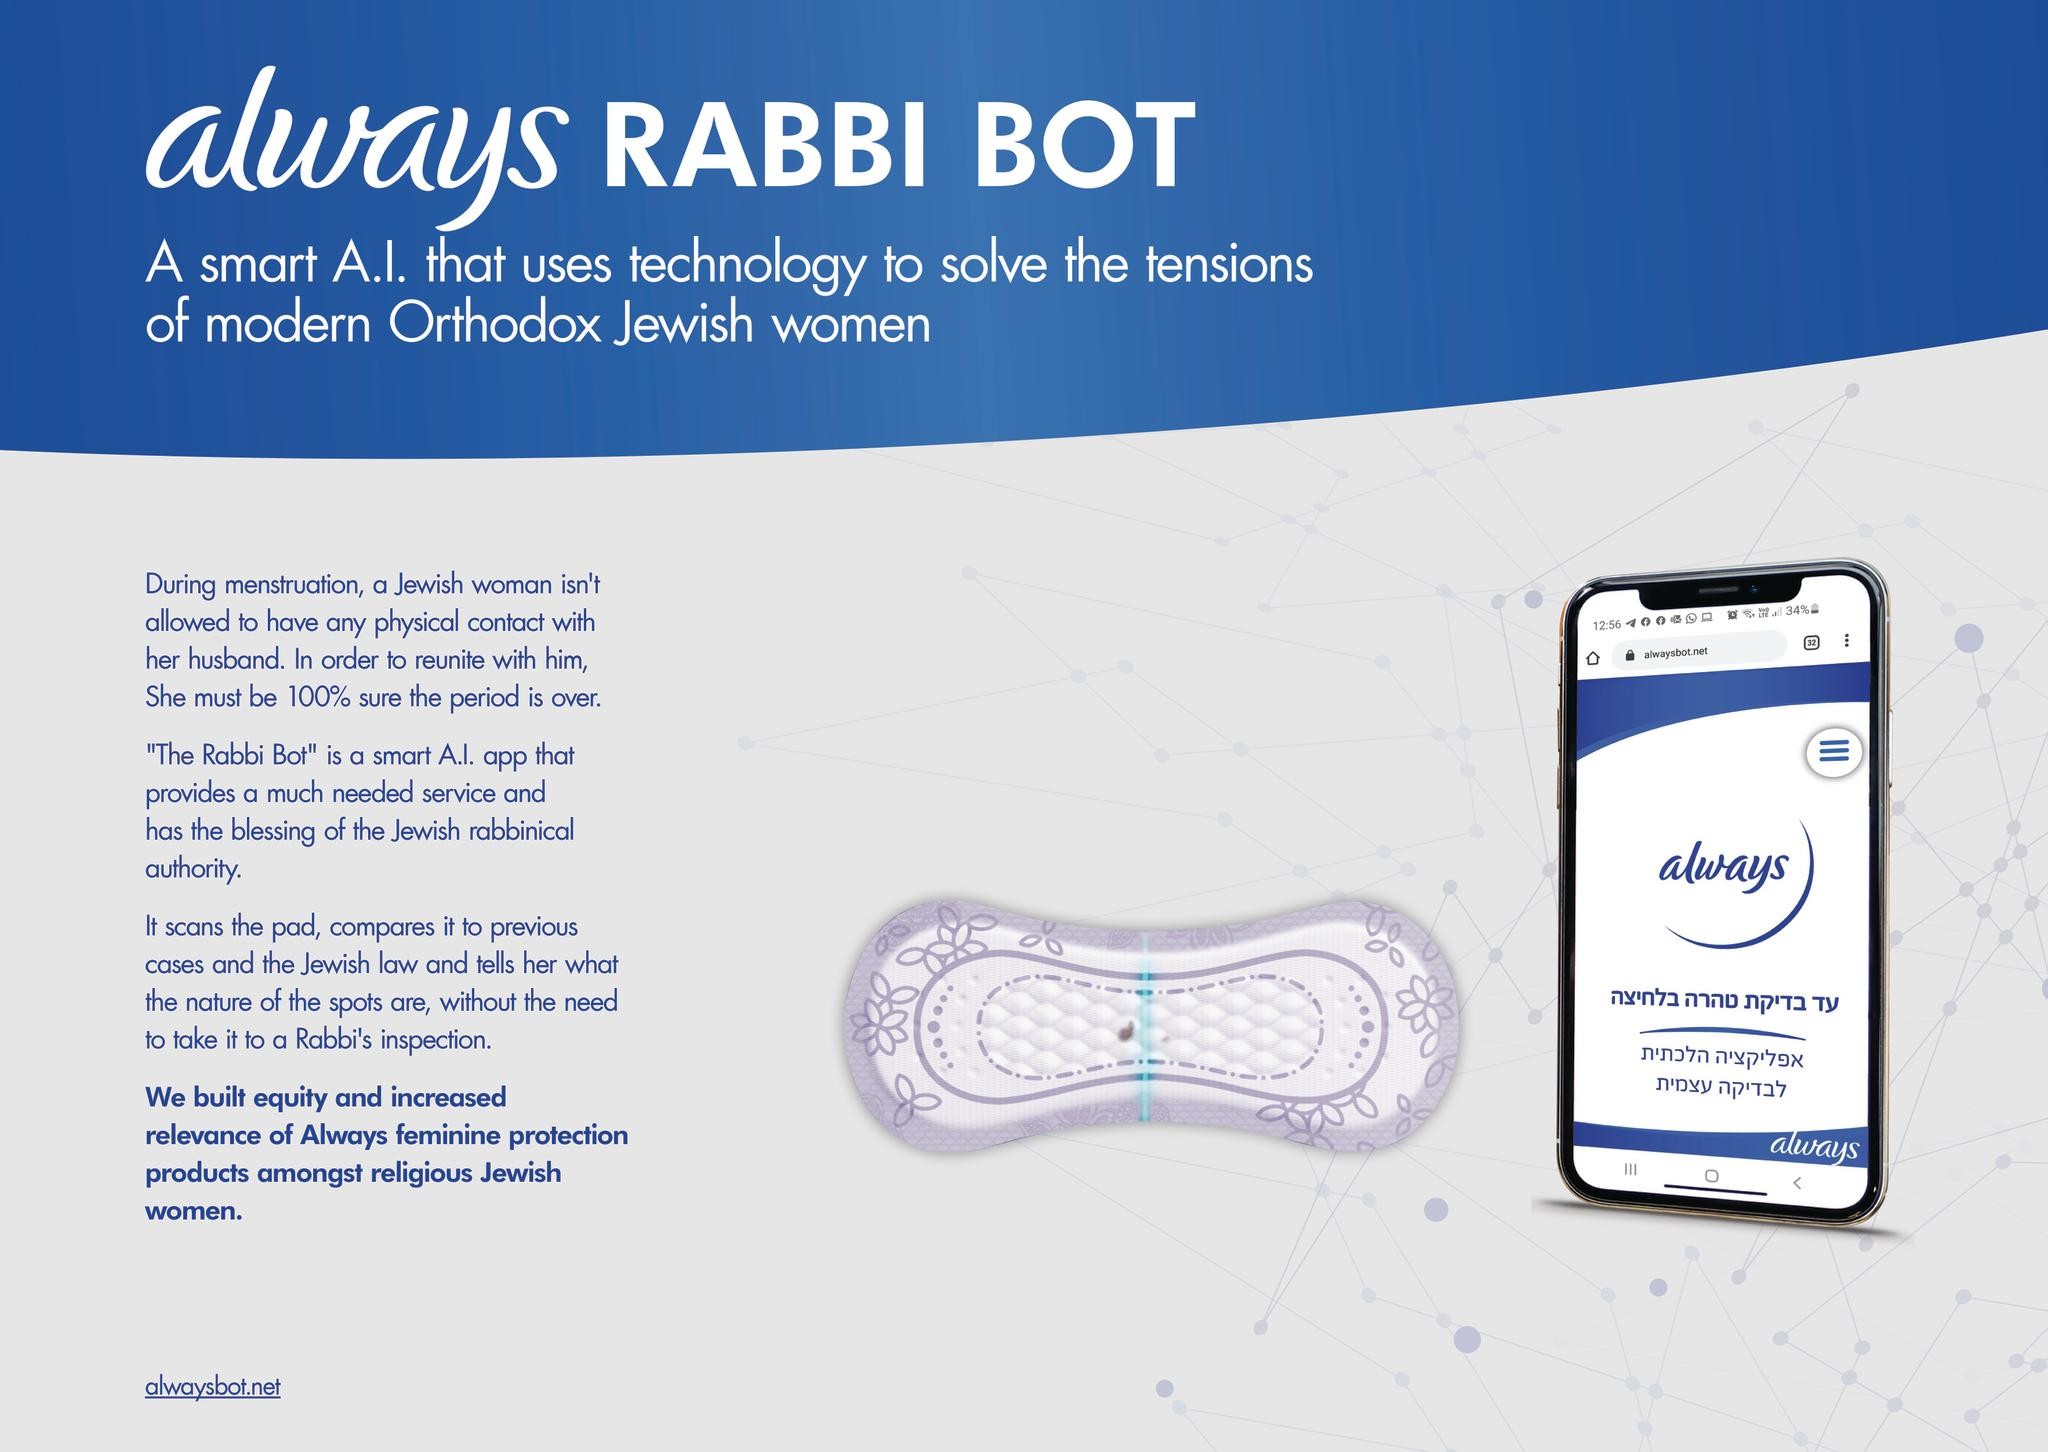 Rabbi Bot